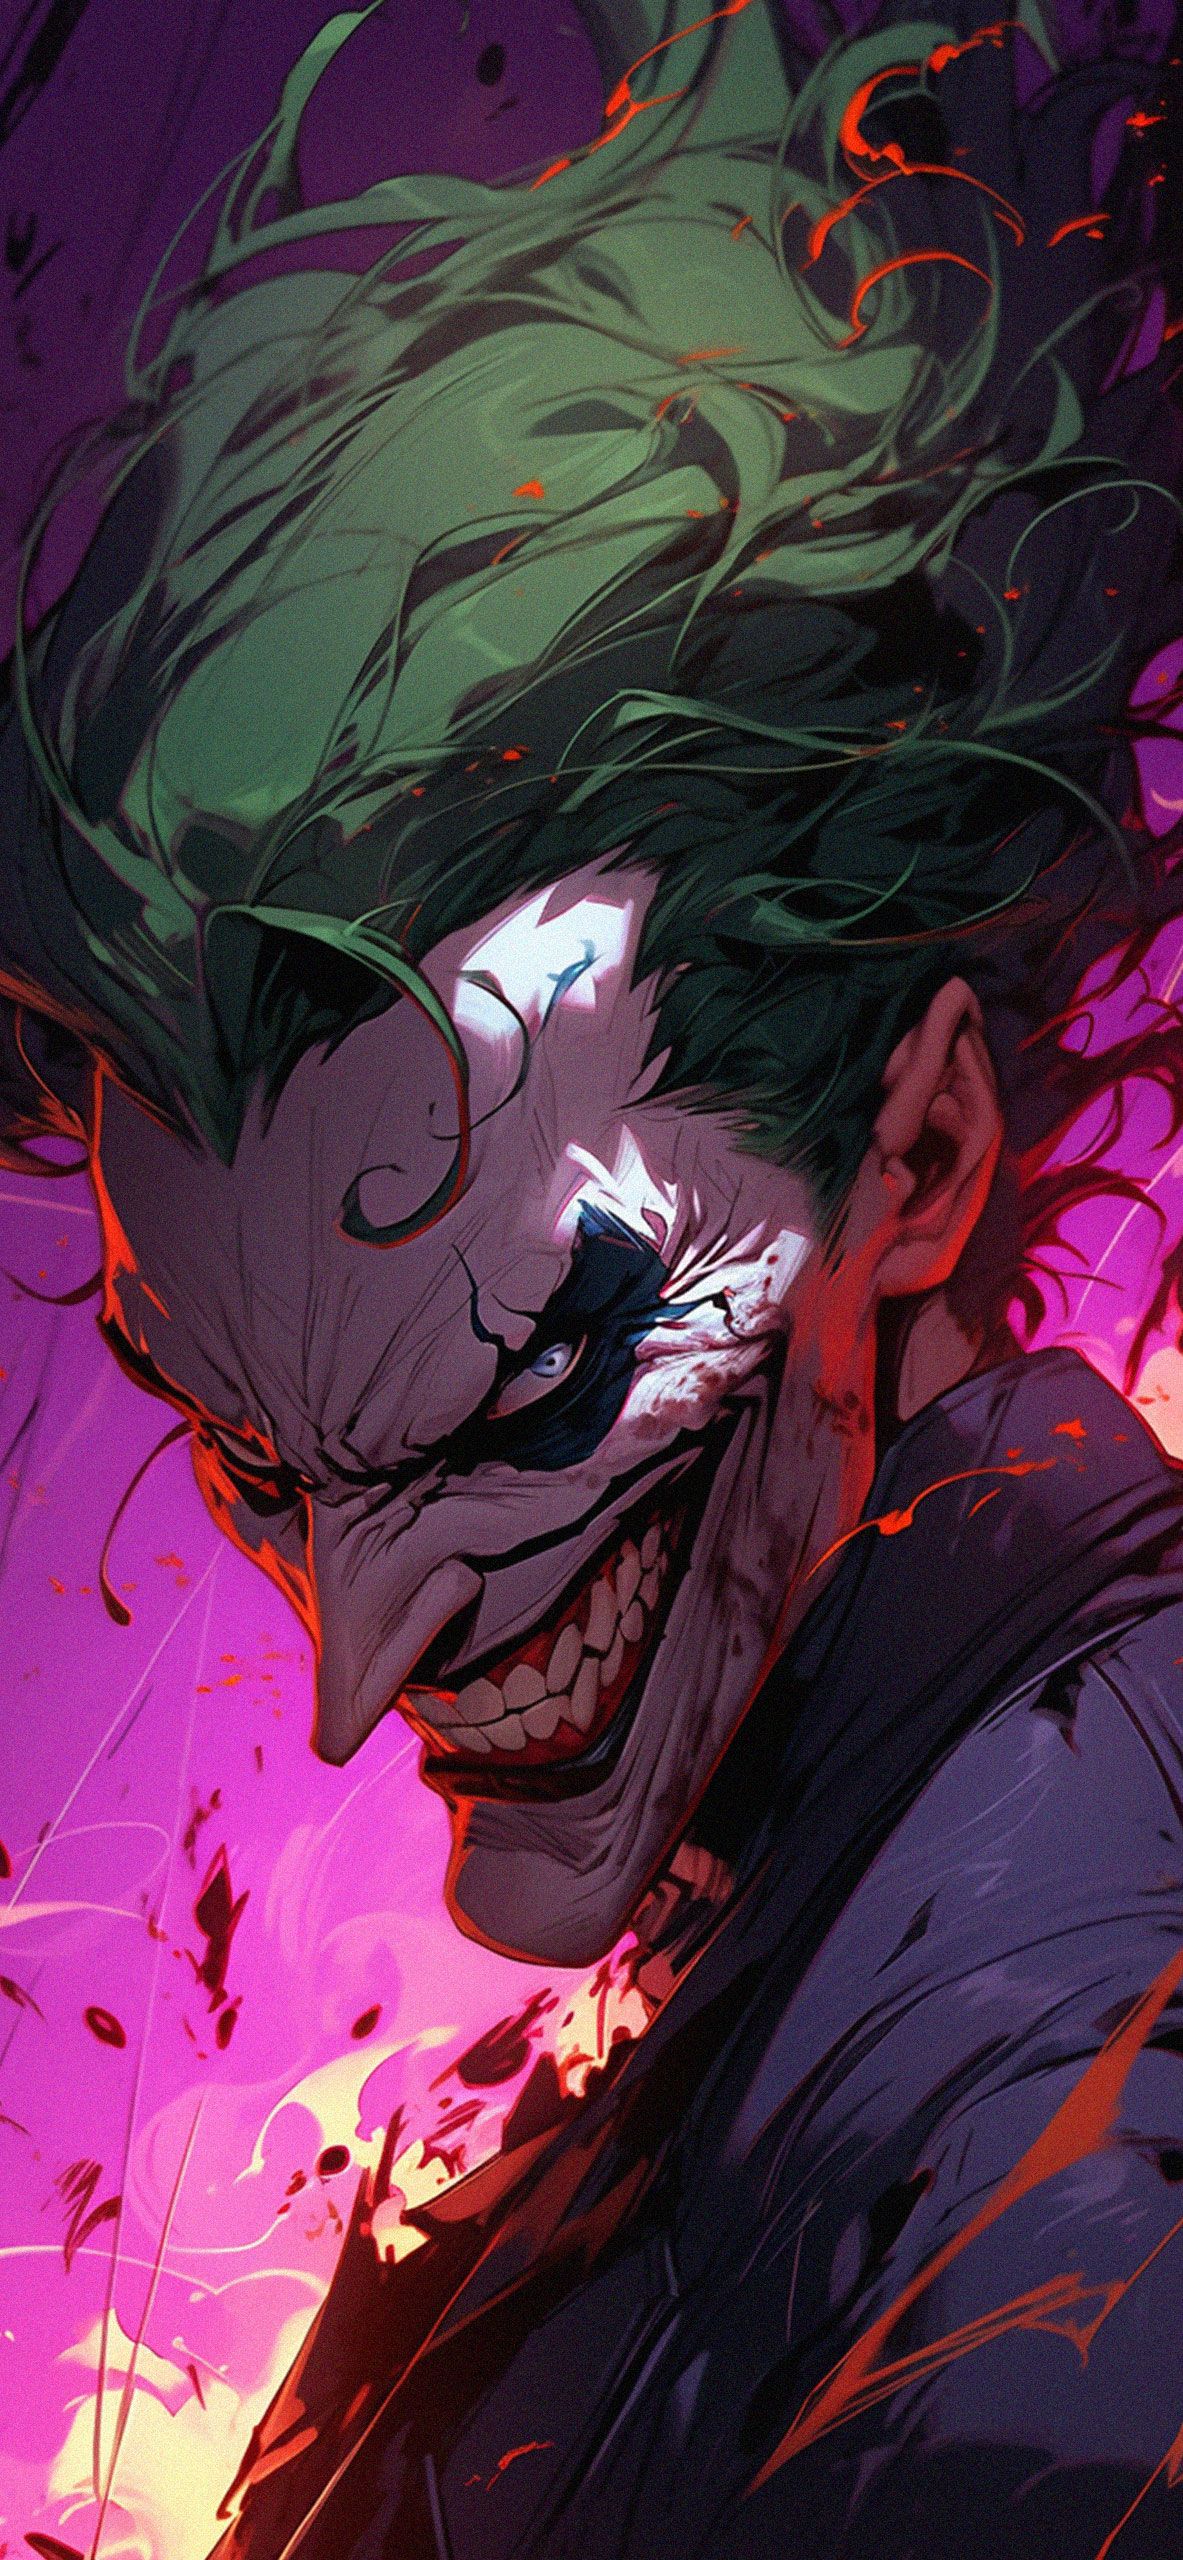  Joker Hintergrundbild 1183x2560. DC Smilling Joker Art Wallpaper Villain Wallpaper iPhone